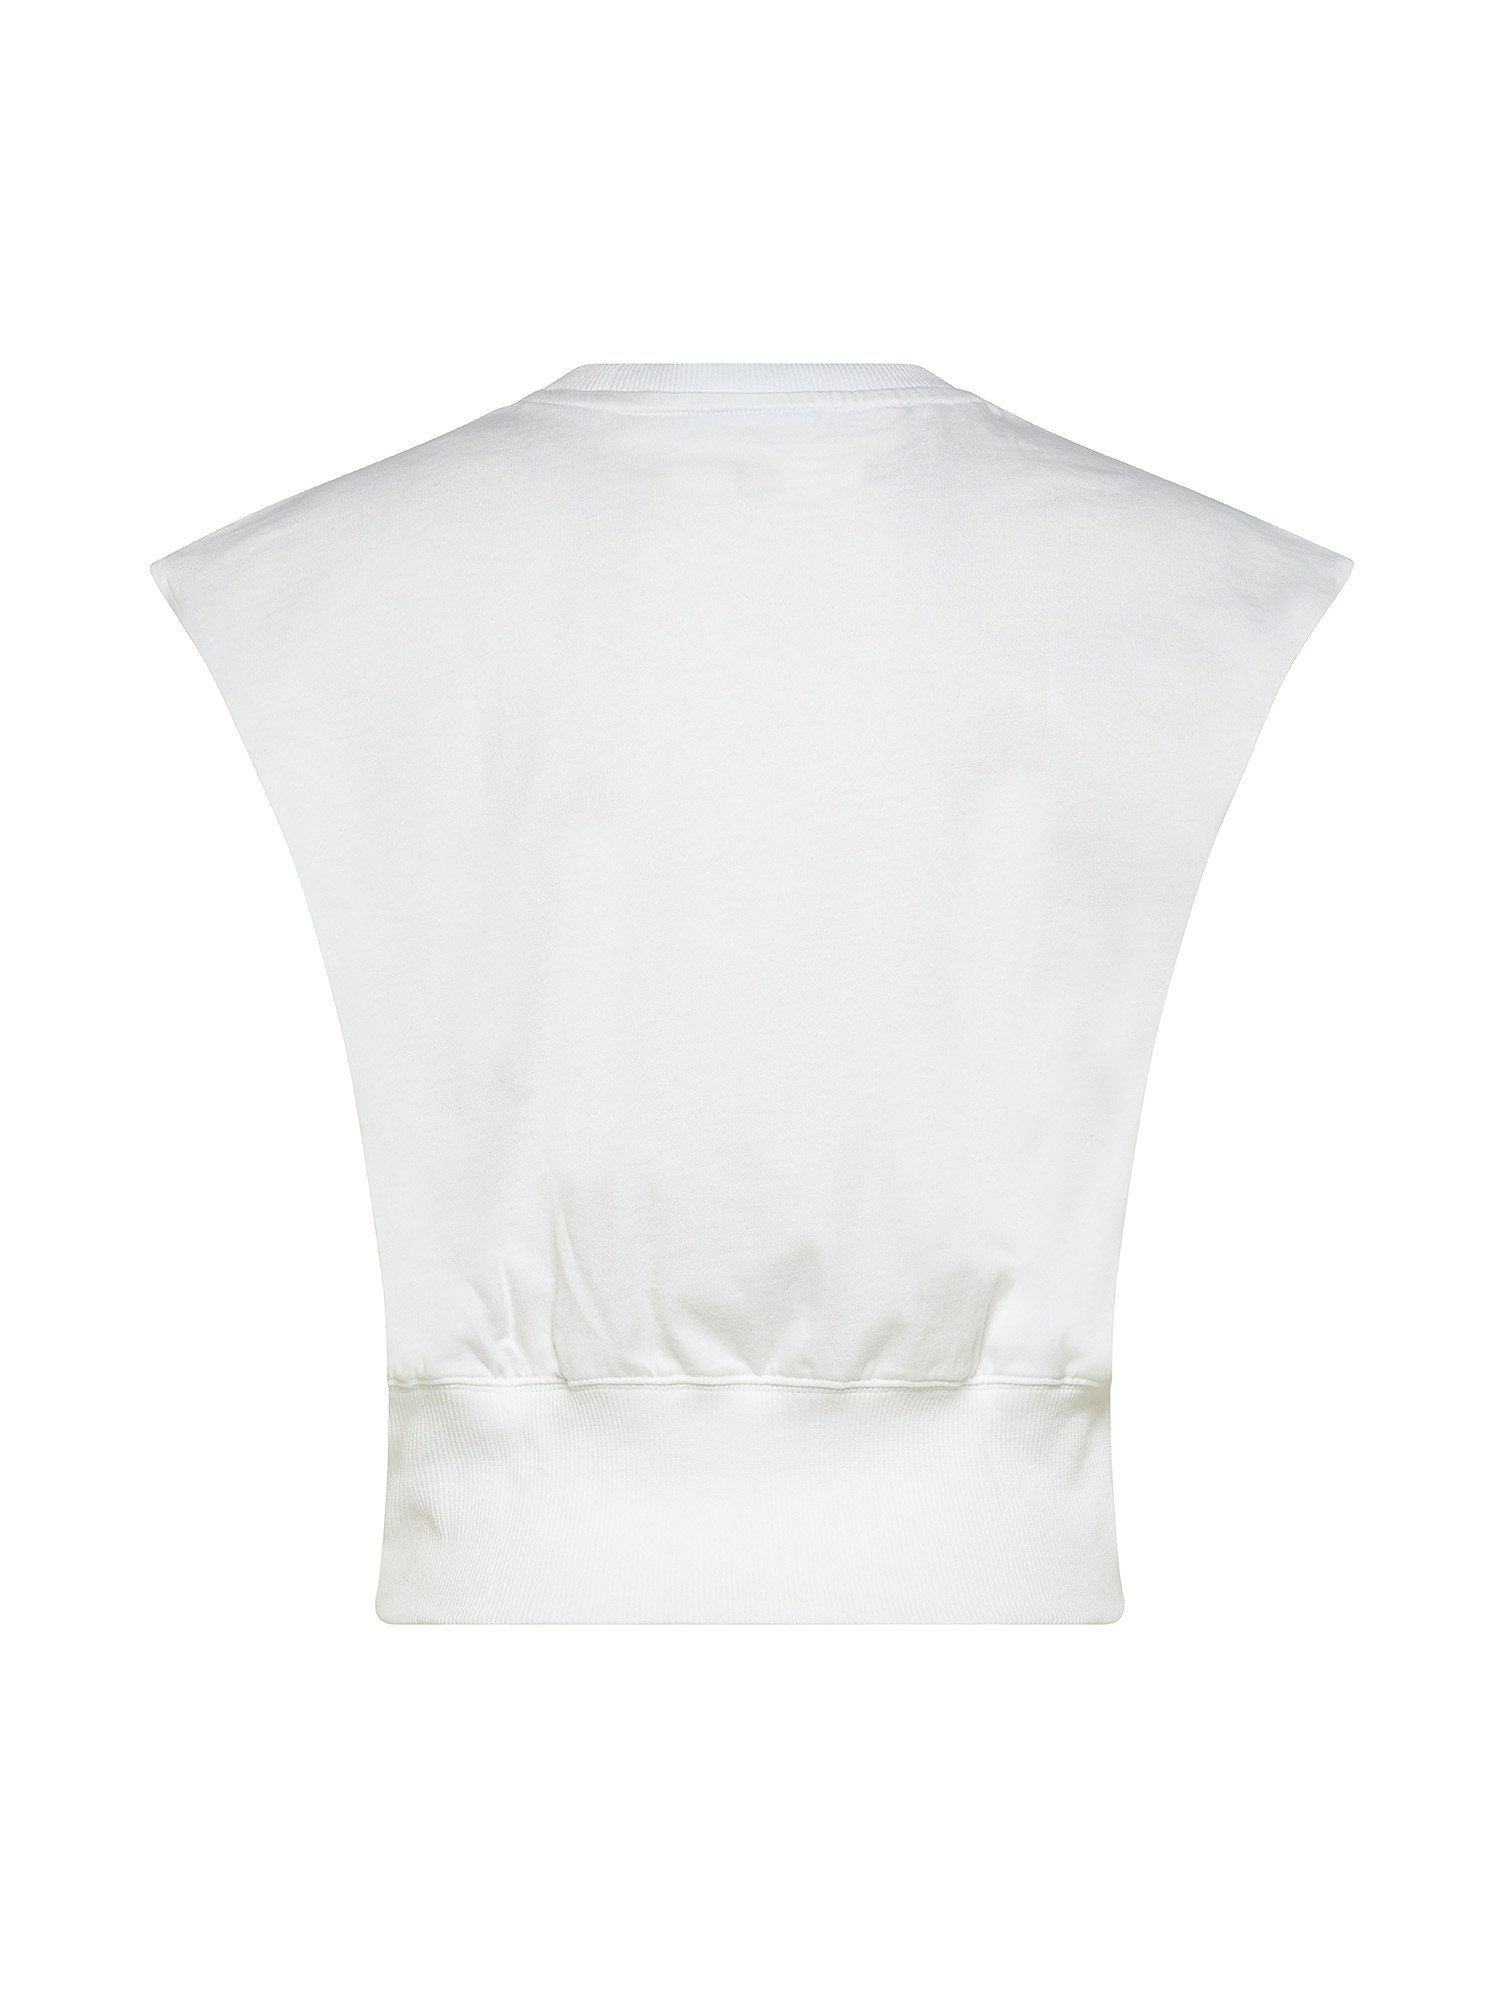 Adidas - T-shirt adicolor con logo, Bianco, large image number 1